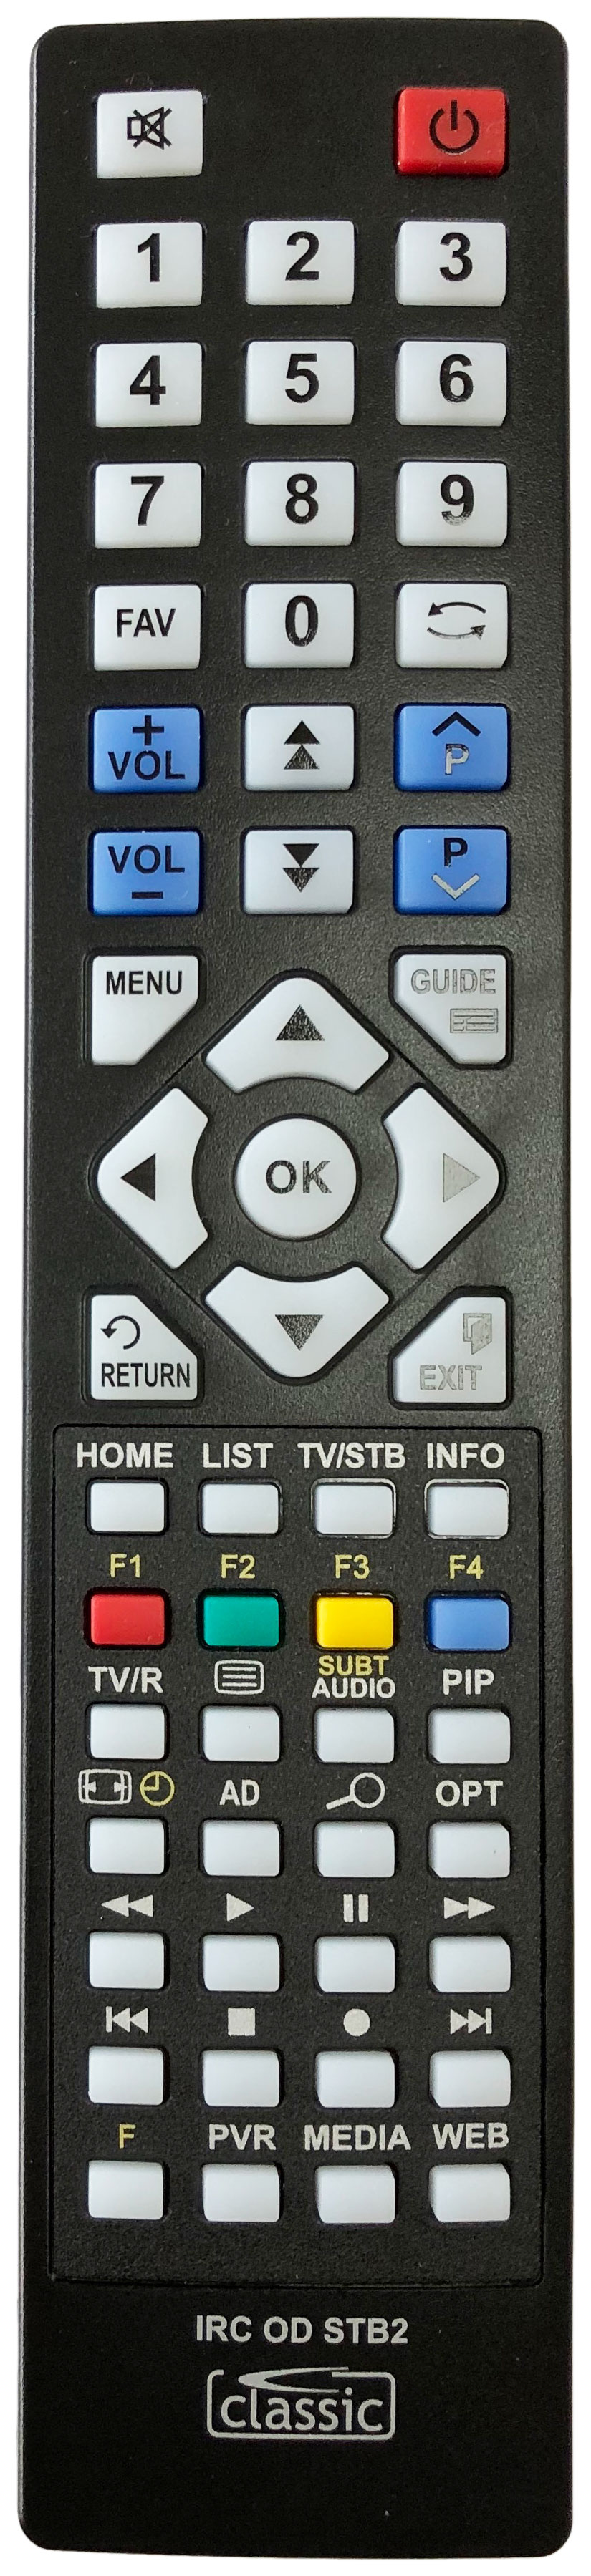 Topfield TP-307 Remote Control